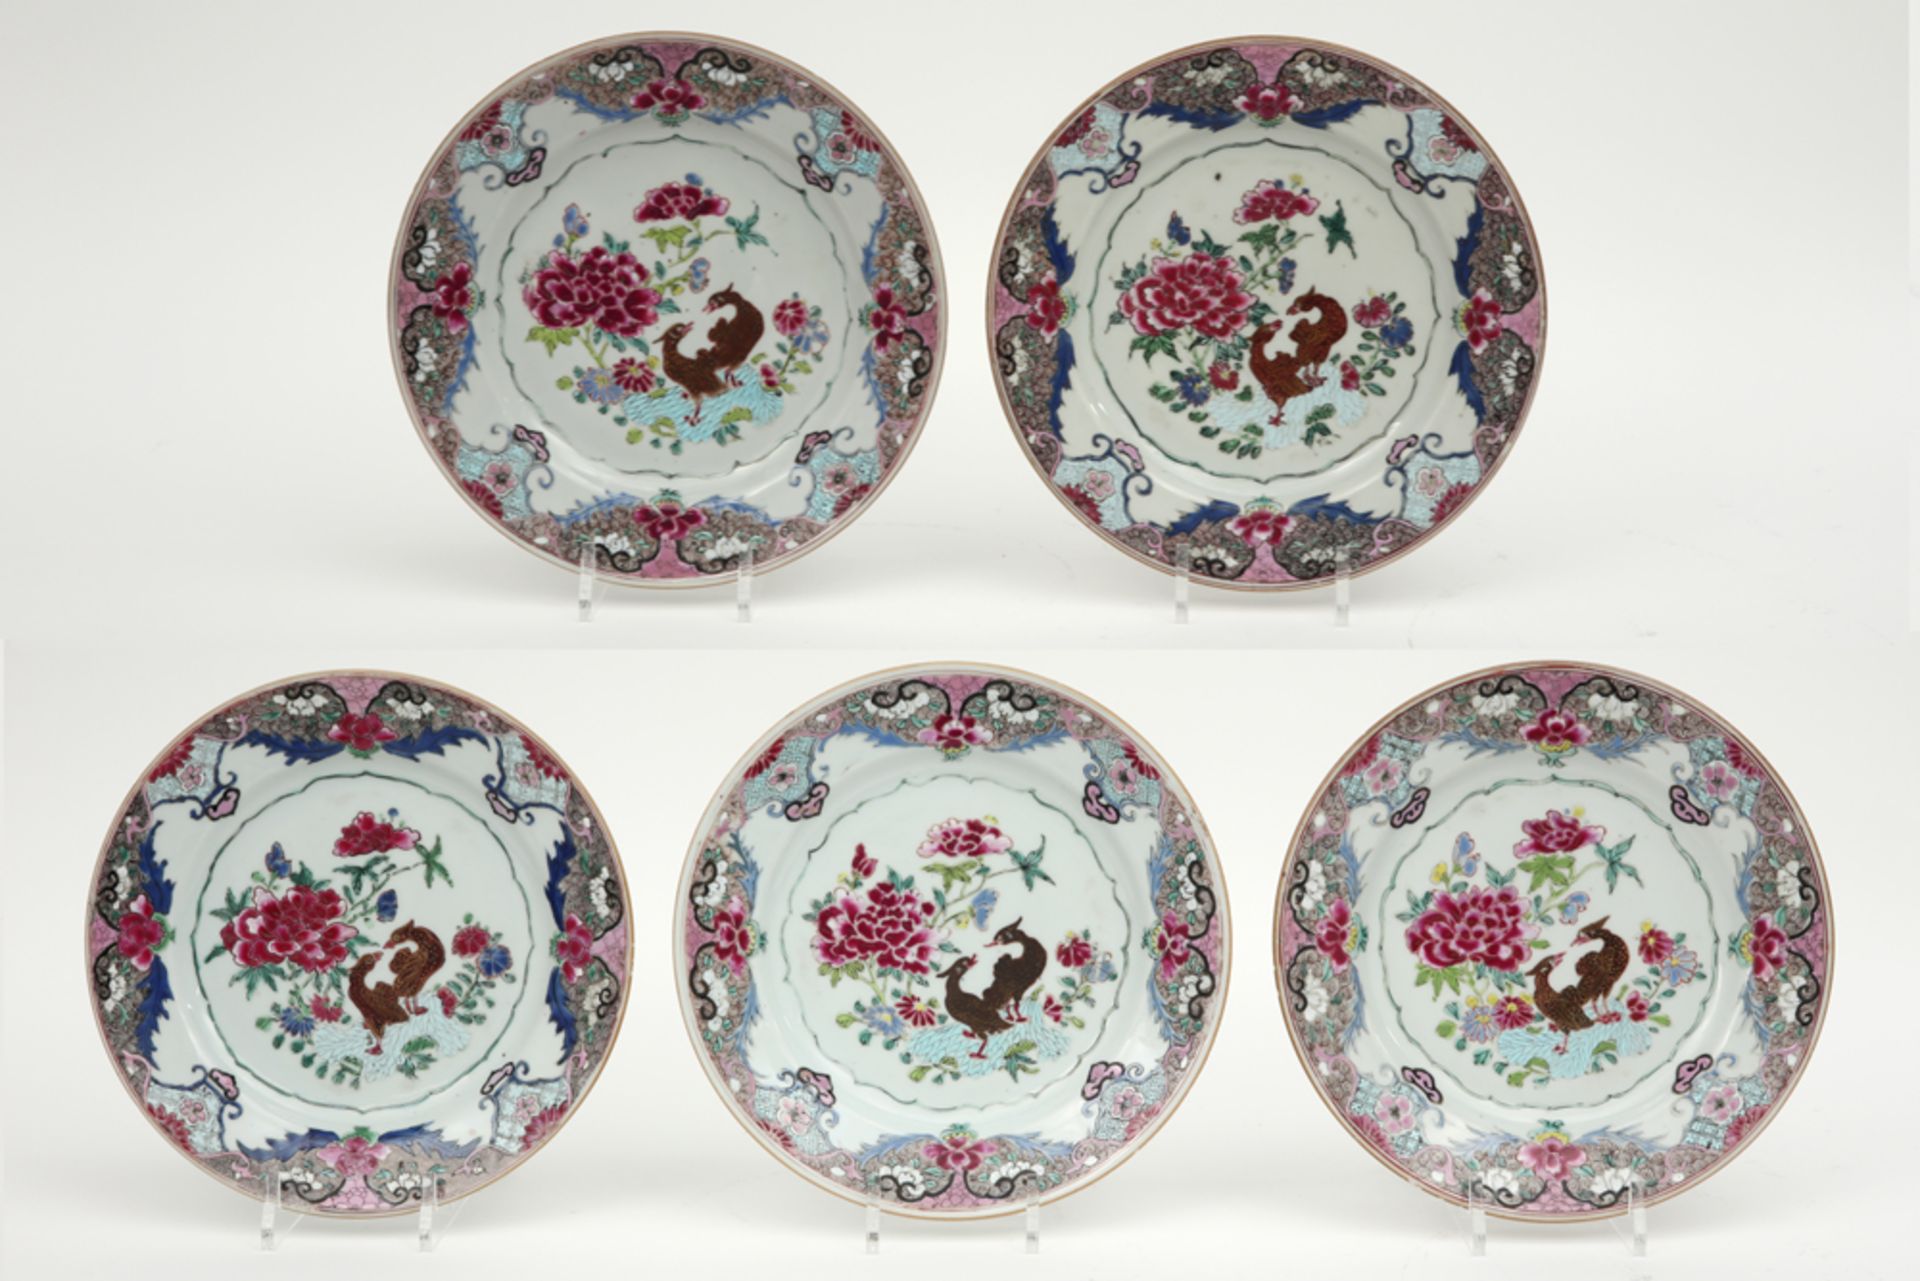 Reeks van vijf achttiende eeuwse Chinese borden in porselein met Famille Rose-decor met bloemen en v